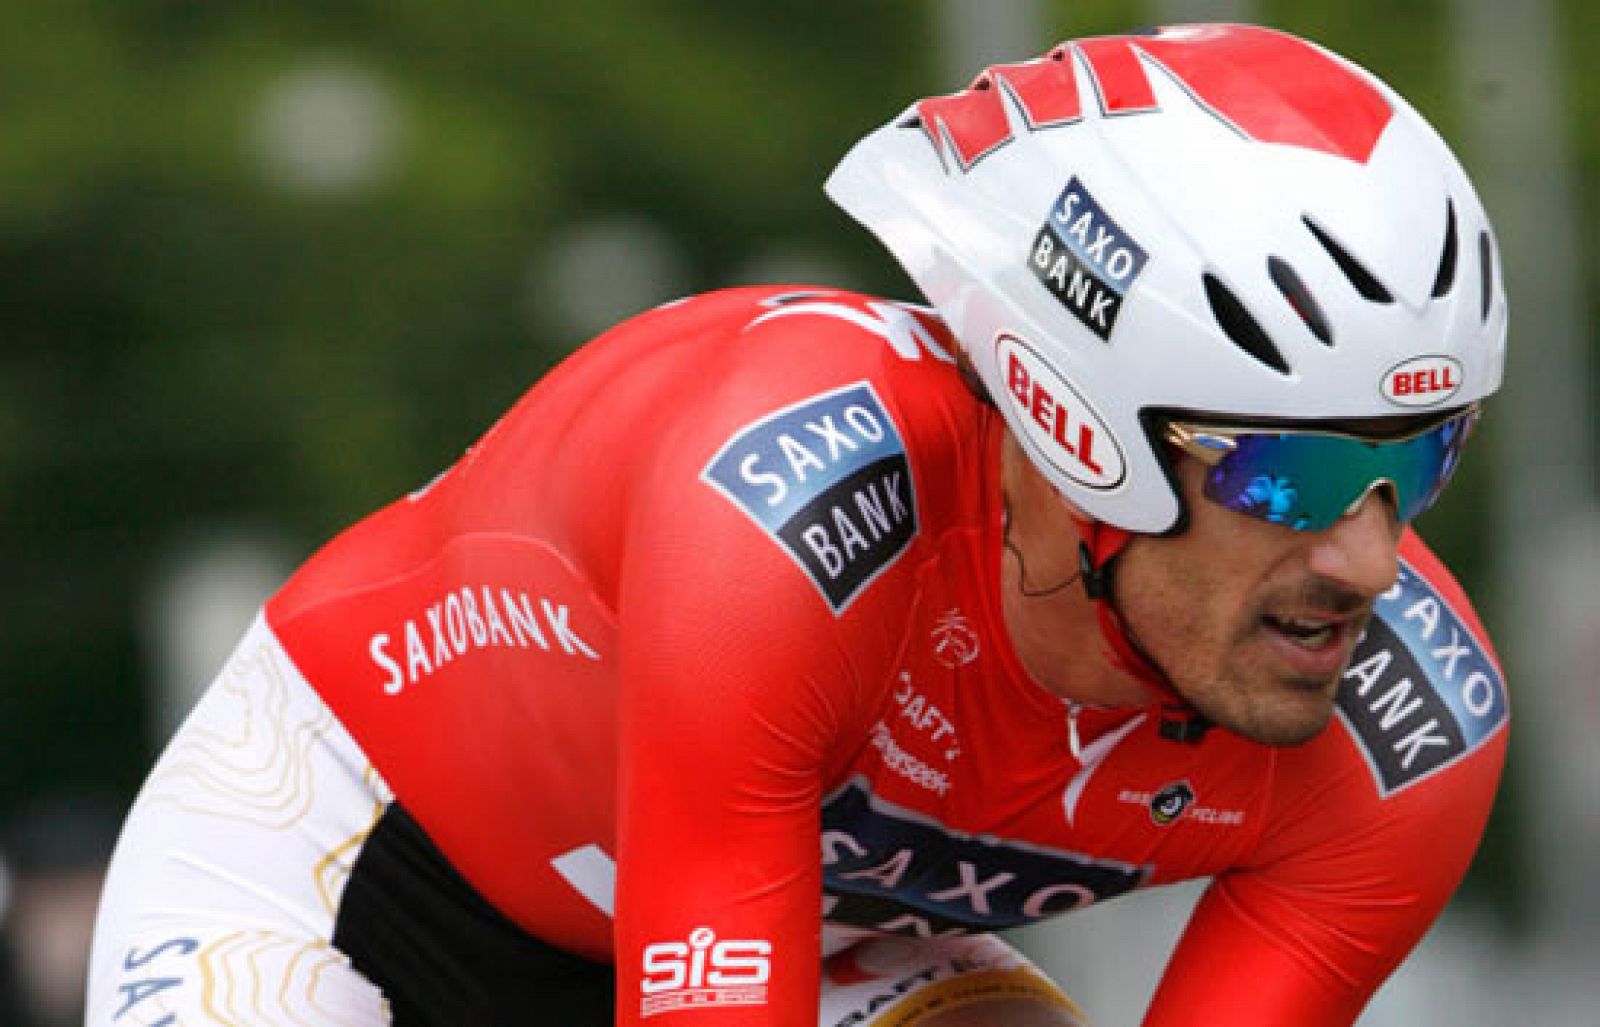 El corredor suizo Fabian Cancellara, del Saxo Bank, hizo buenos los pronósticos y se adjudicó la Vuelta a Suiza al imponerse con autoridad en la crono final de 39 kilómetros, con salida y llegada en Berna.